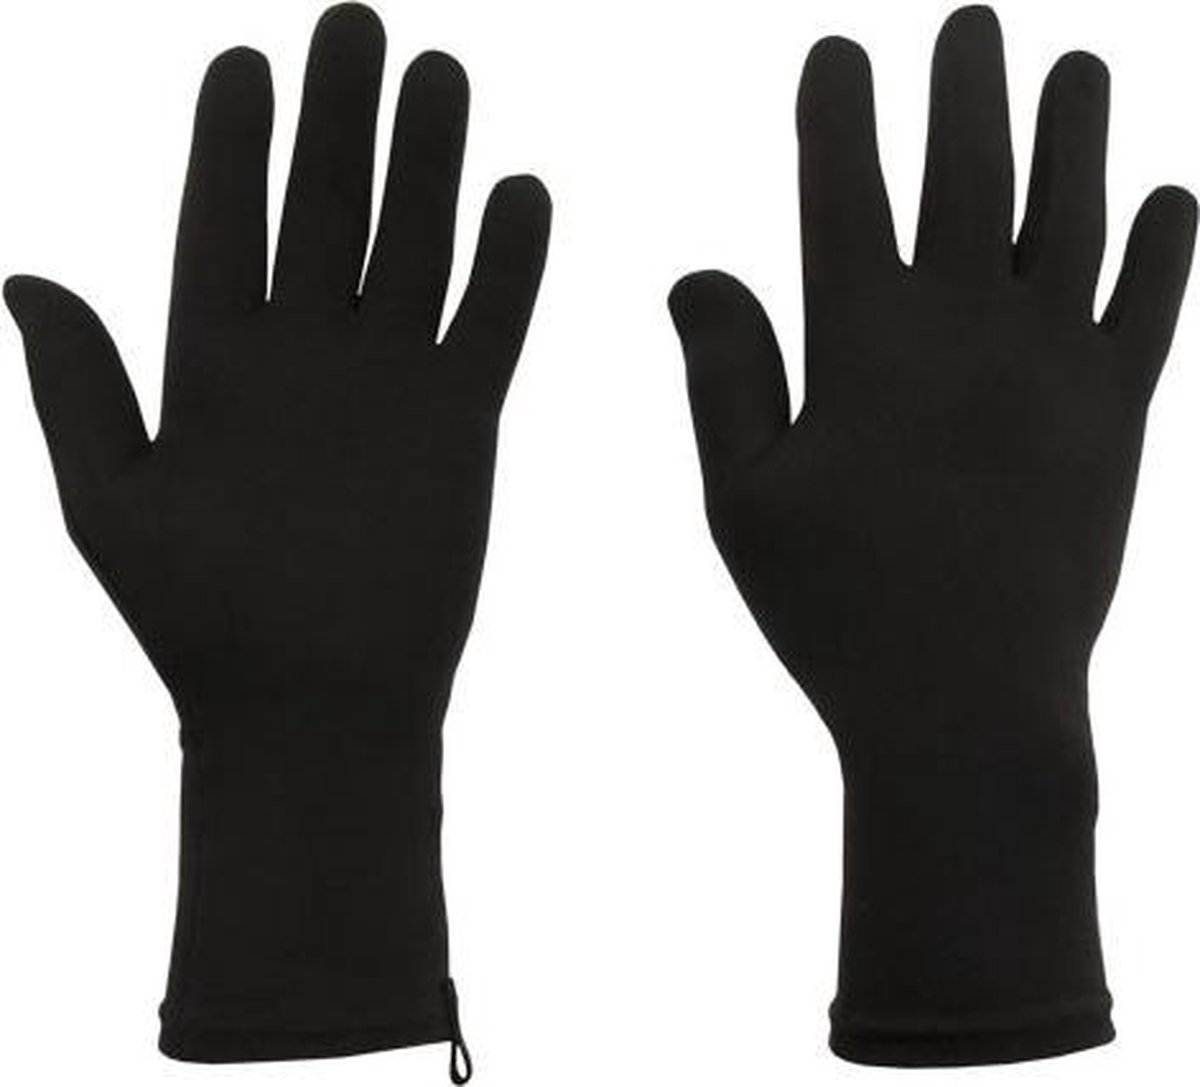 Protexgloves Original handschoenen zwart medium - Tegen eczeem, zon gevoeligheid en andere chronische huid- en handaandoeningen